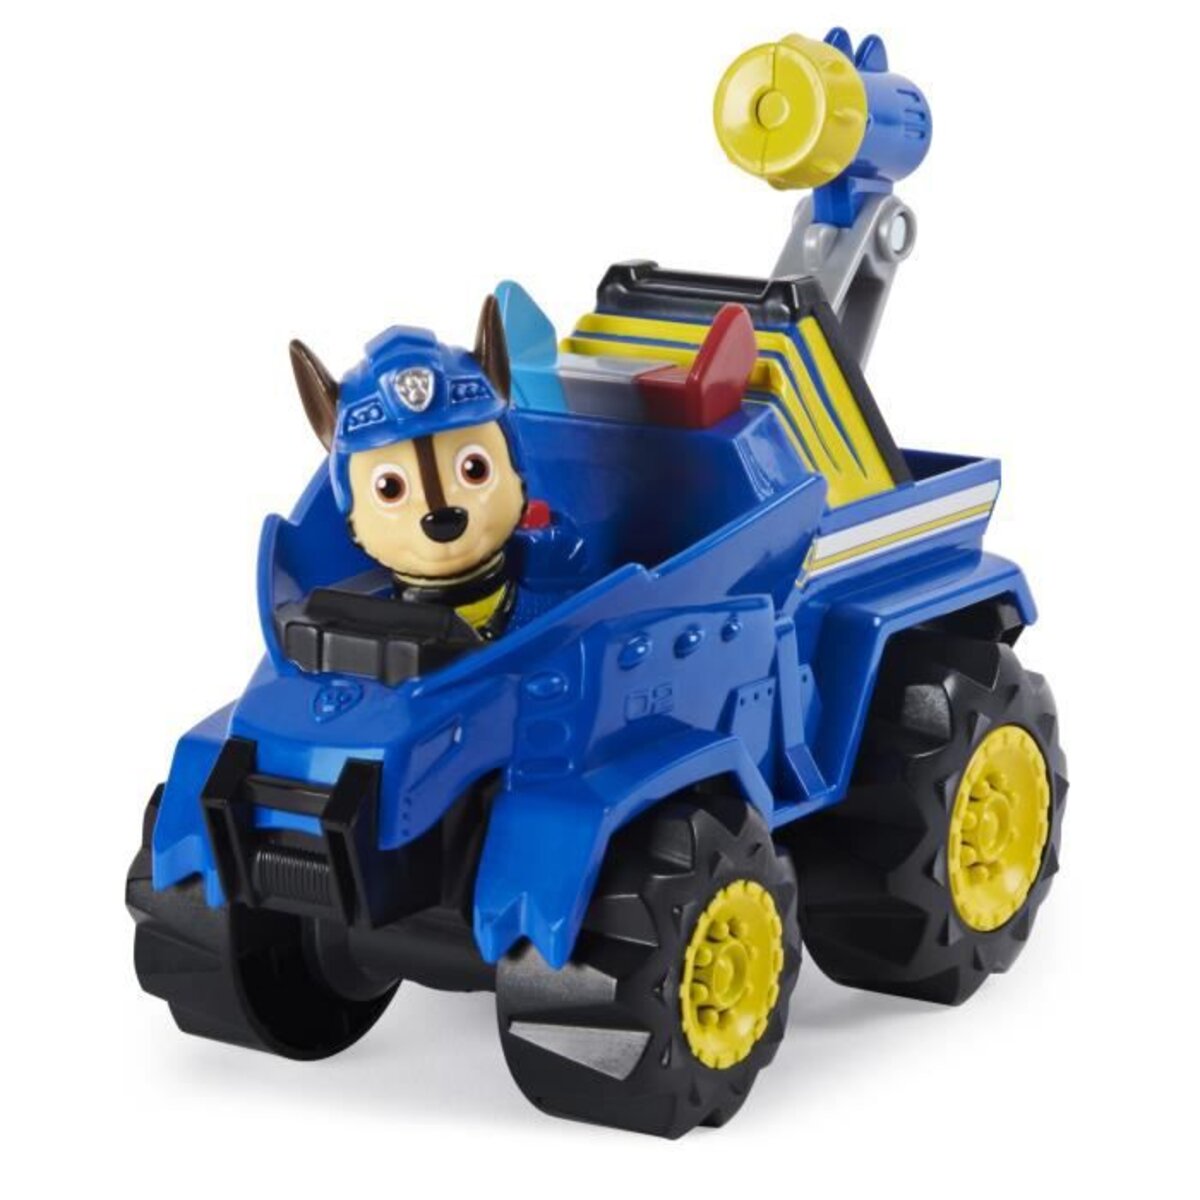 Pat patrouille - vehicule + figurine deluxe marcus dino rescue paw patrol -  6059518 - voiture a remonter jeu jouet enfant 3 ans - La Poste